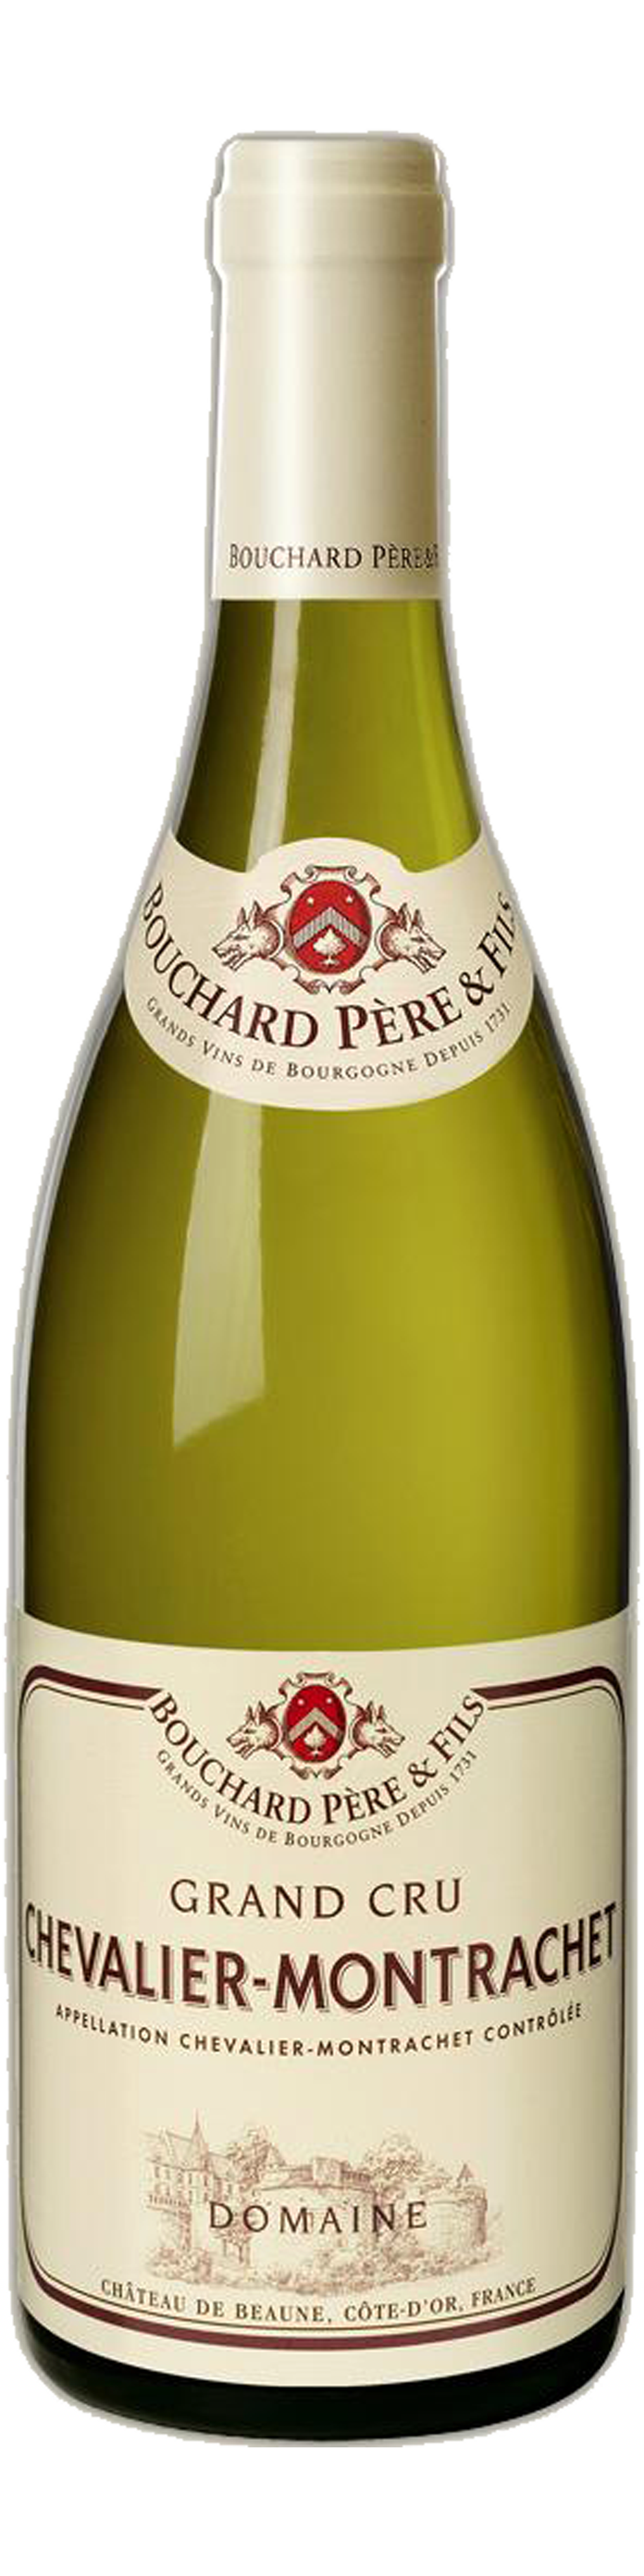 Bottle shot of 2011 Chevalier Montrachet Grand Cru